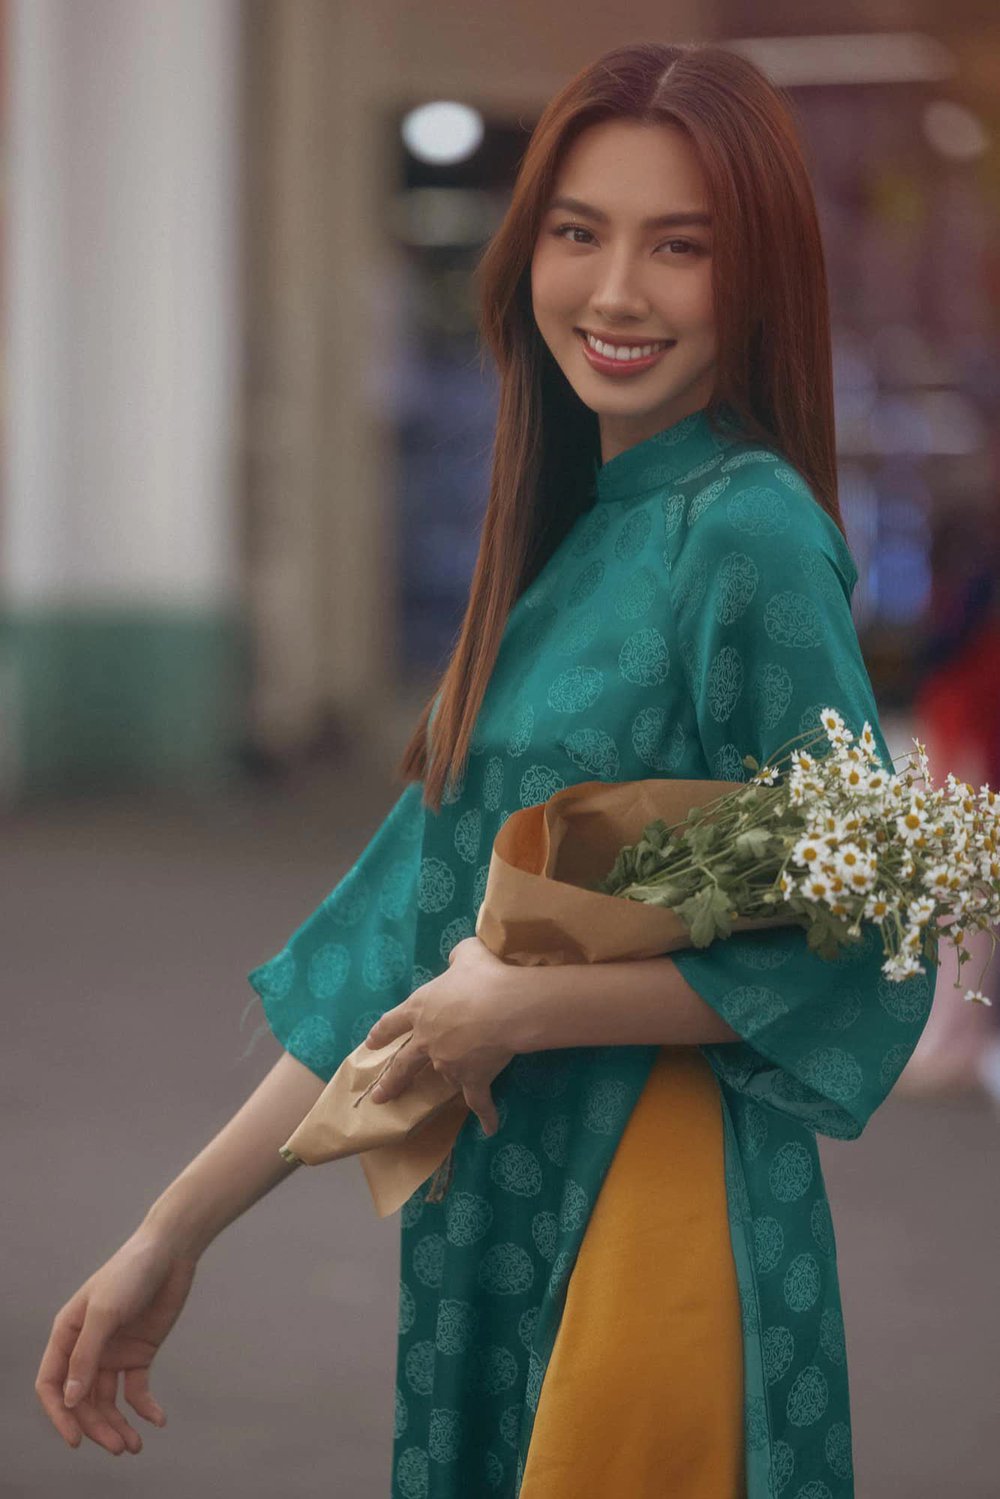 Mê mệt loạt áo dài Tết của Hoa hậu Thùy Tiên: Toàn đồ local brand quen mặt, thiết kế điệu đà cứ diện là xinh - ảnh 2